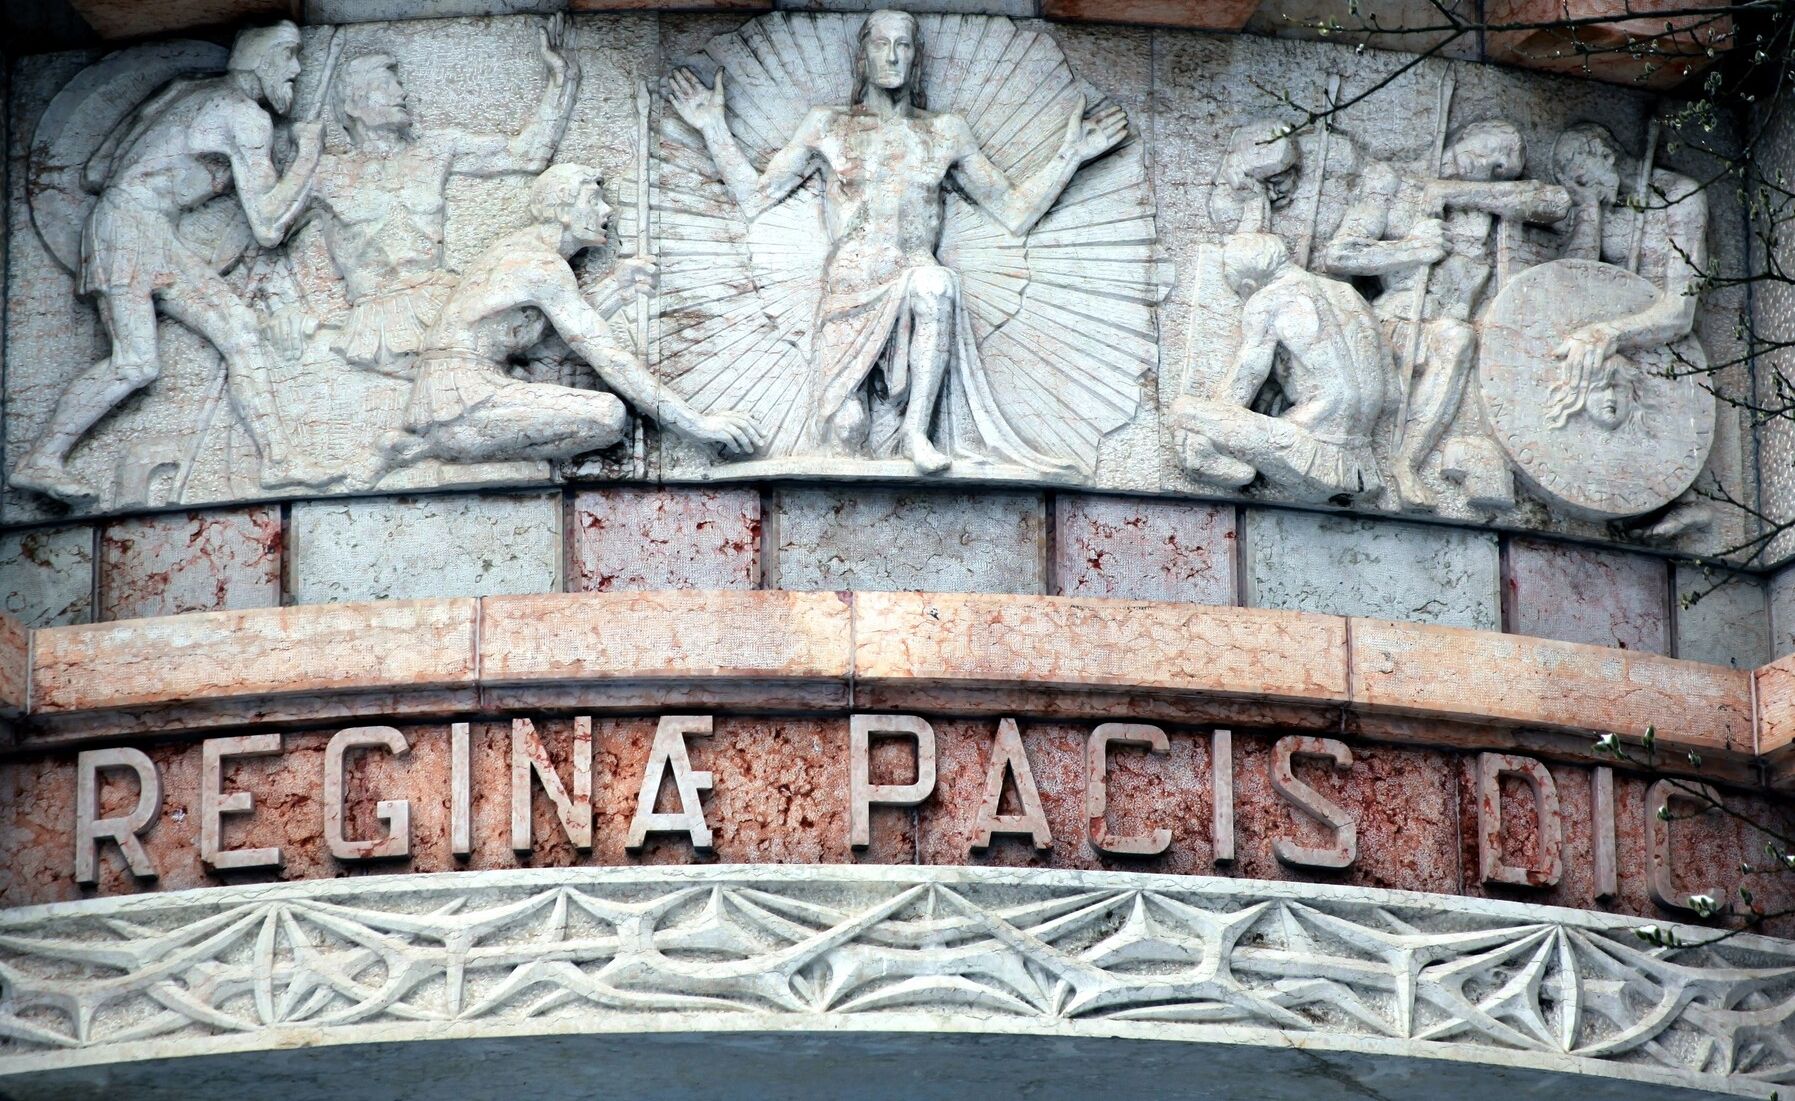 [Translate to English:] Detailfotografie eines Reliefs an der Kapelle "Regina Pacis" auf dem Dachauer Leitenberg. Das Relief zeigt Jesus umstrahlt und von flehenden Menschen umgeben.